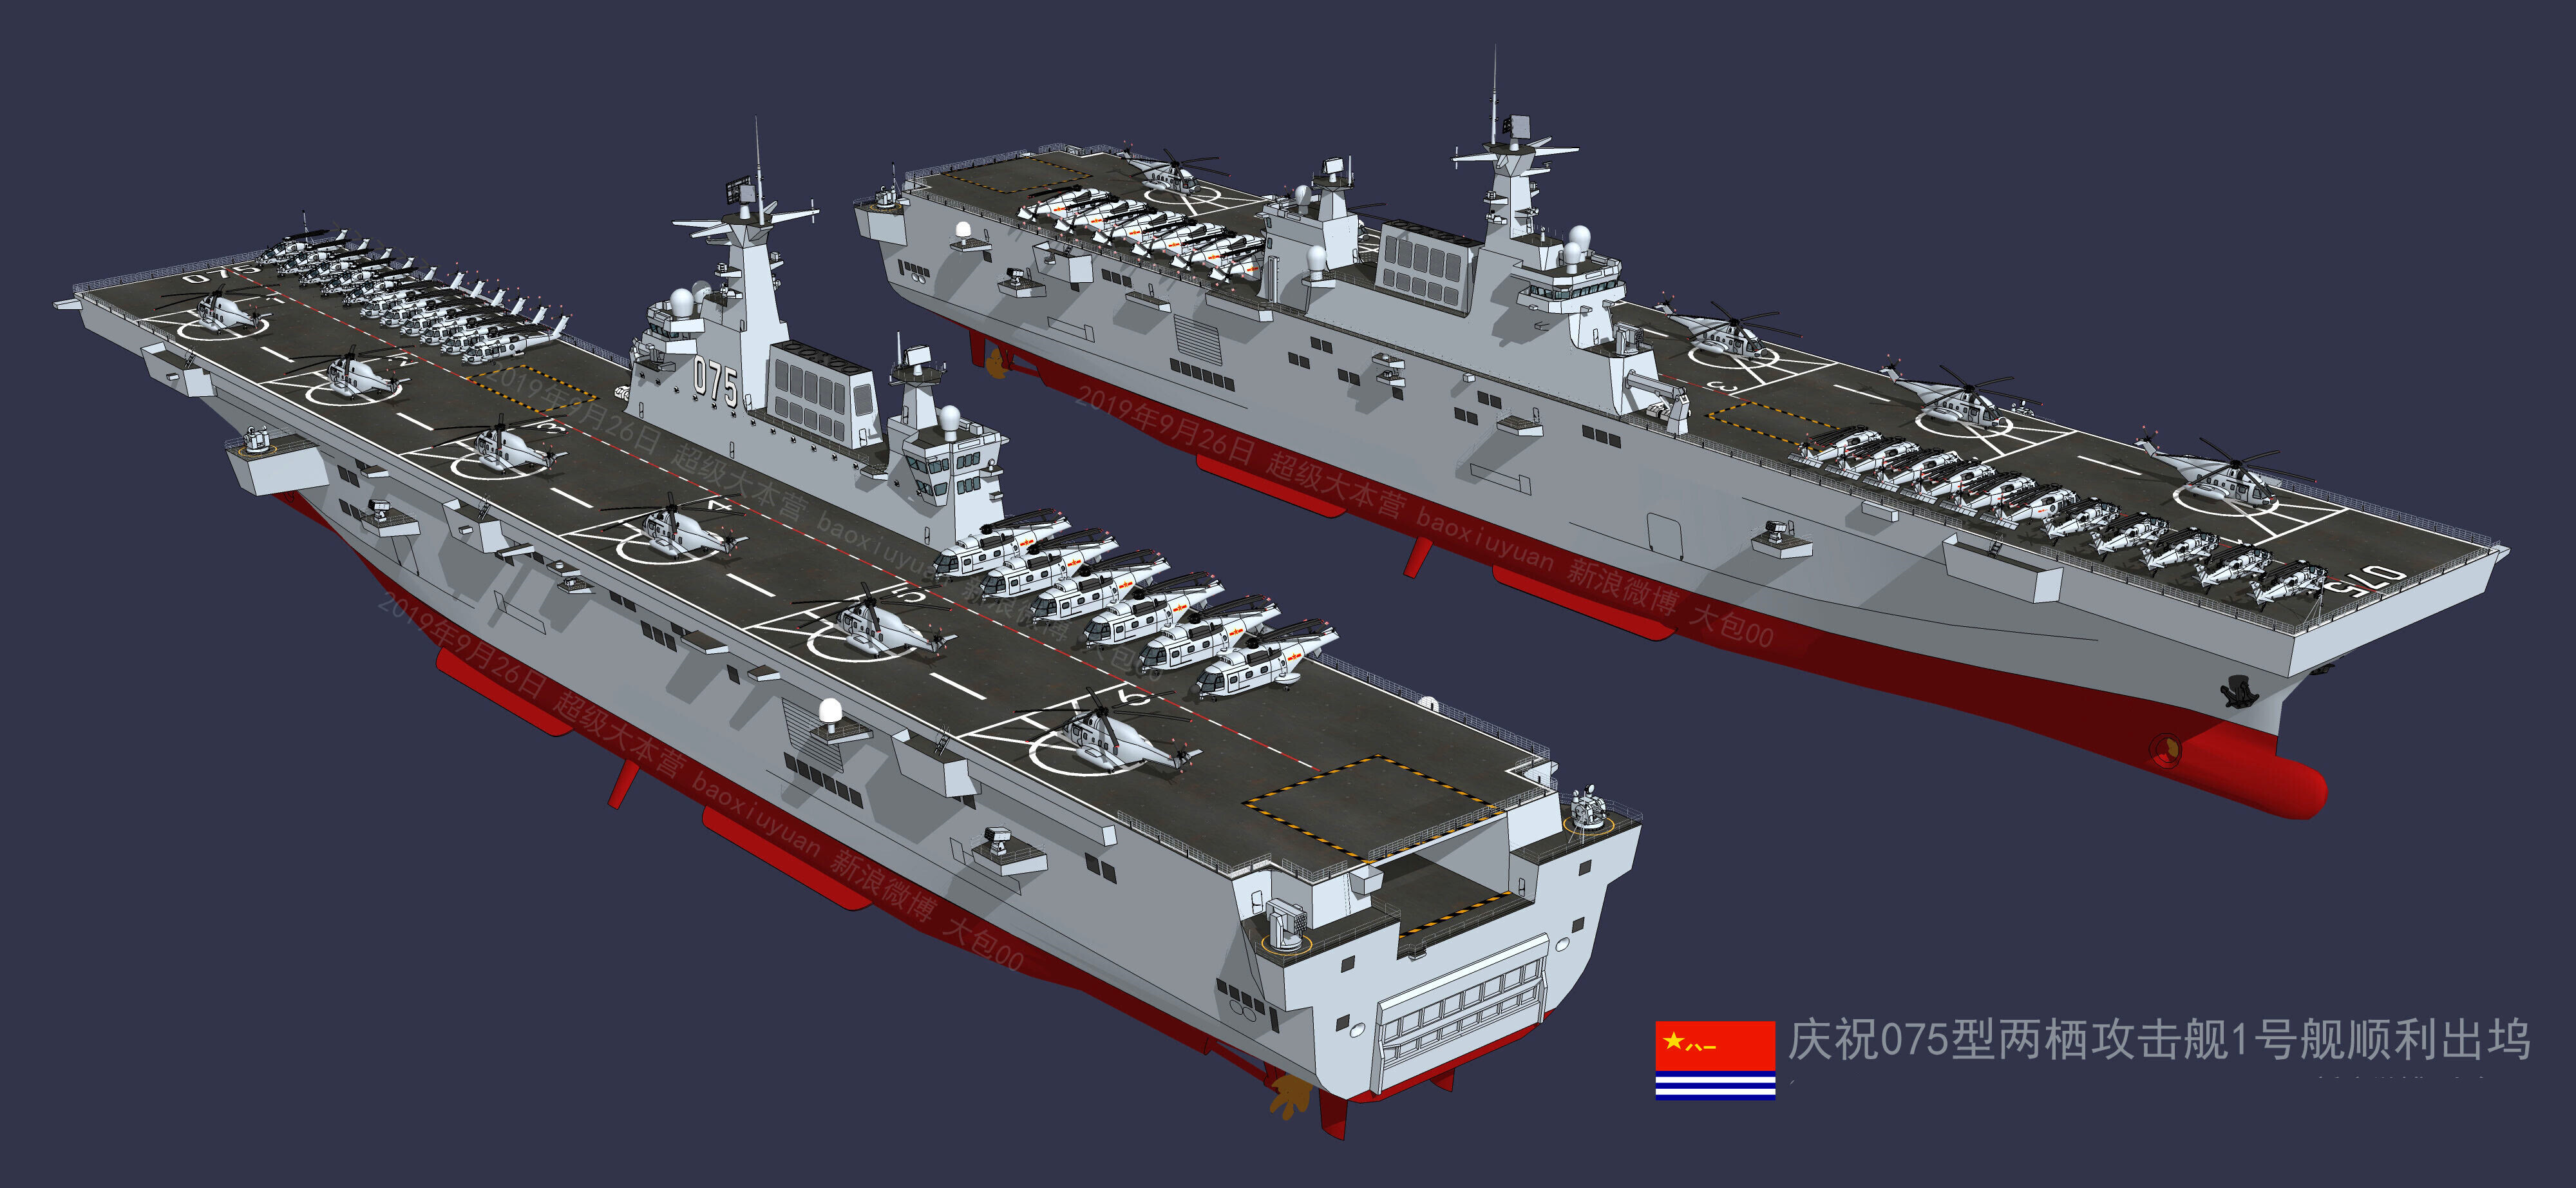 075二号舰服役在即,中国海军两栖攻击舰进展神速,0758